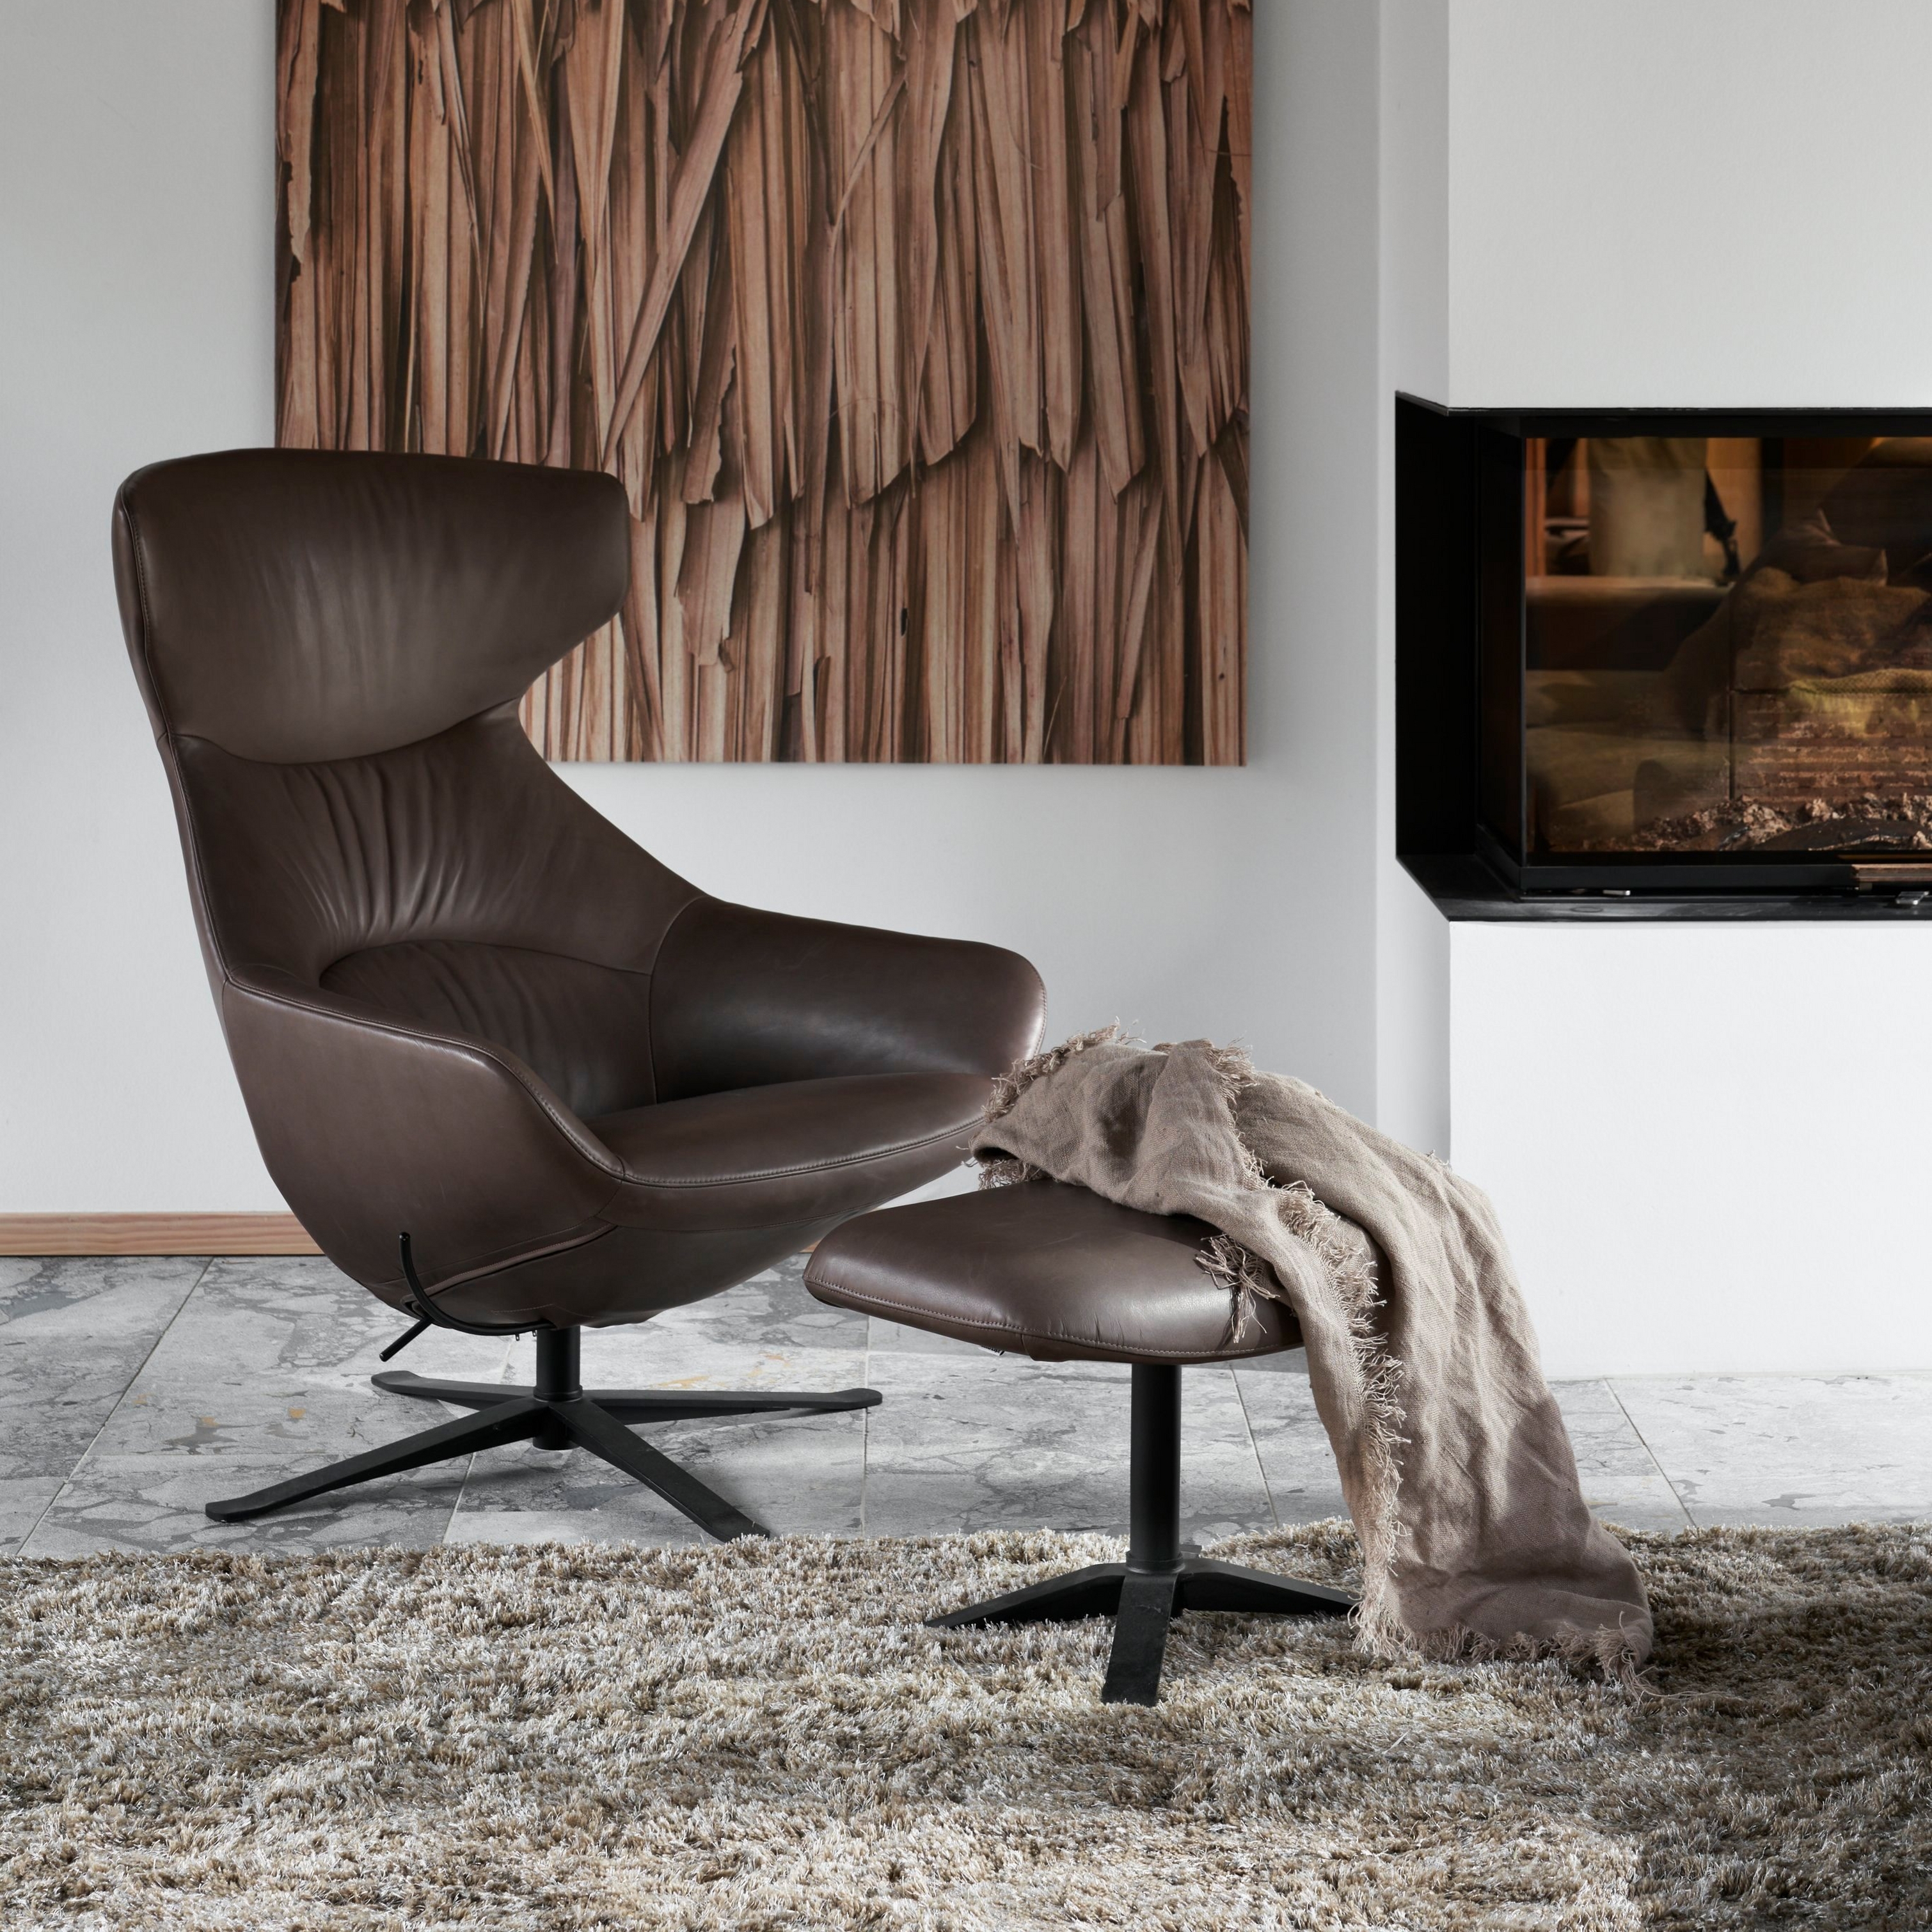 Moderner Stuhl aus braunem Leder mit Hocker, Fleece-Teppich, Holzkunst und Kamin.